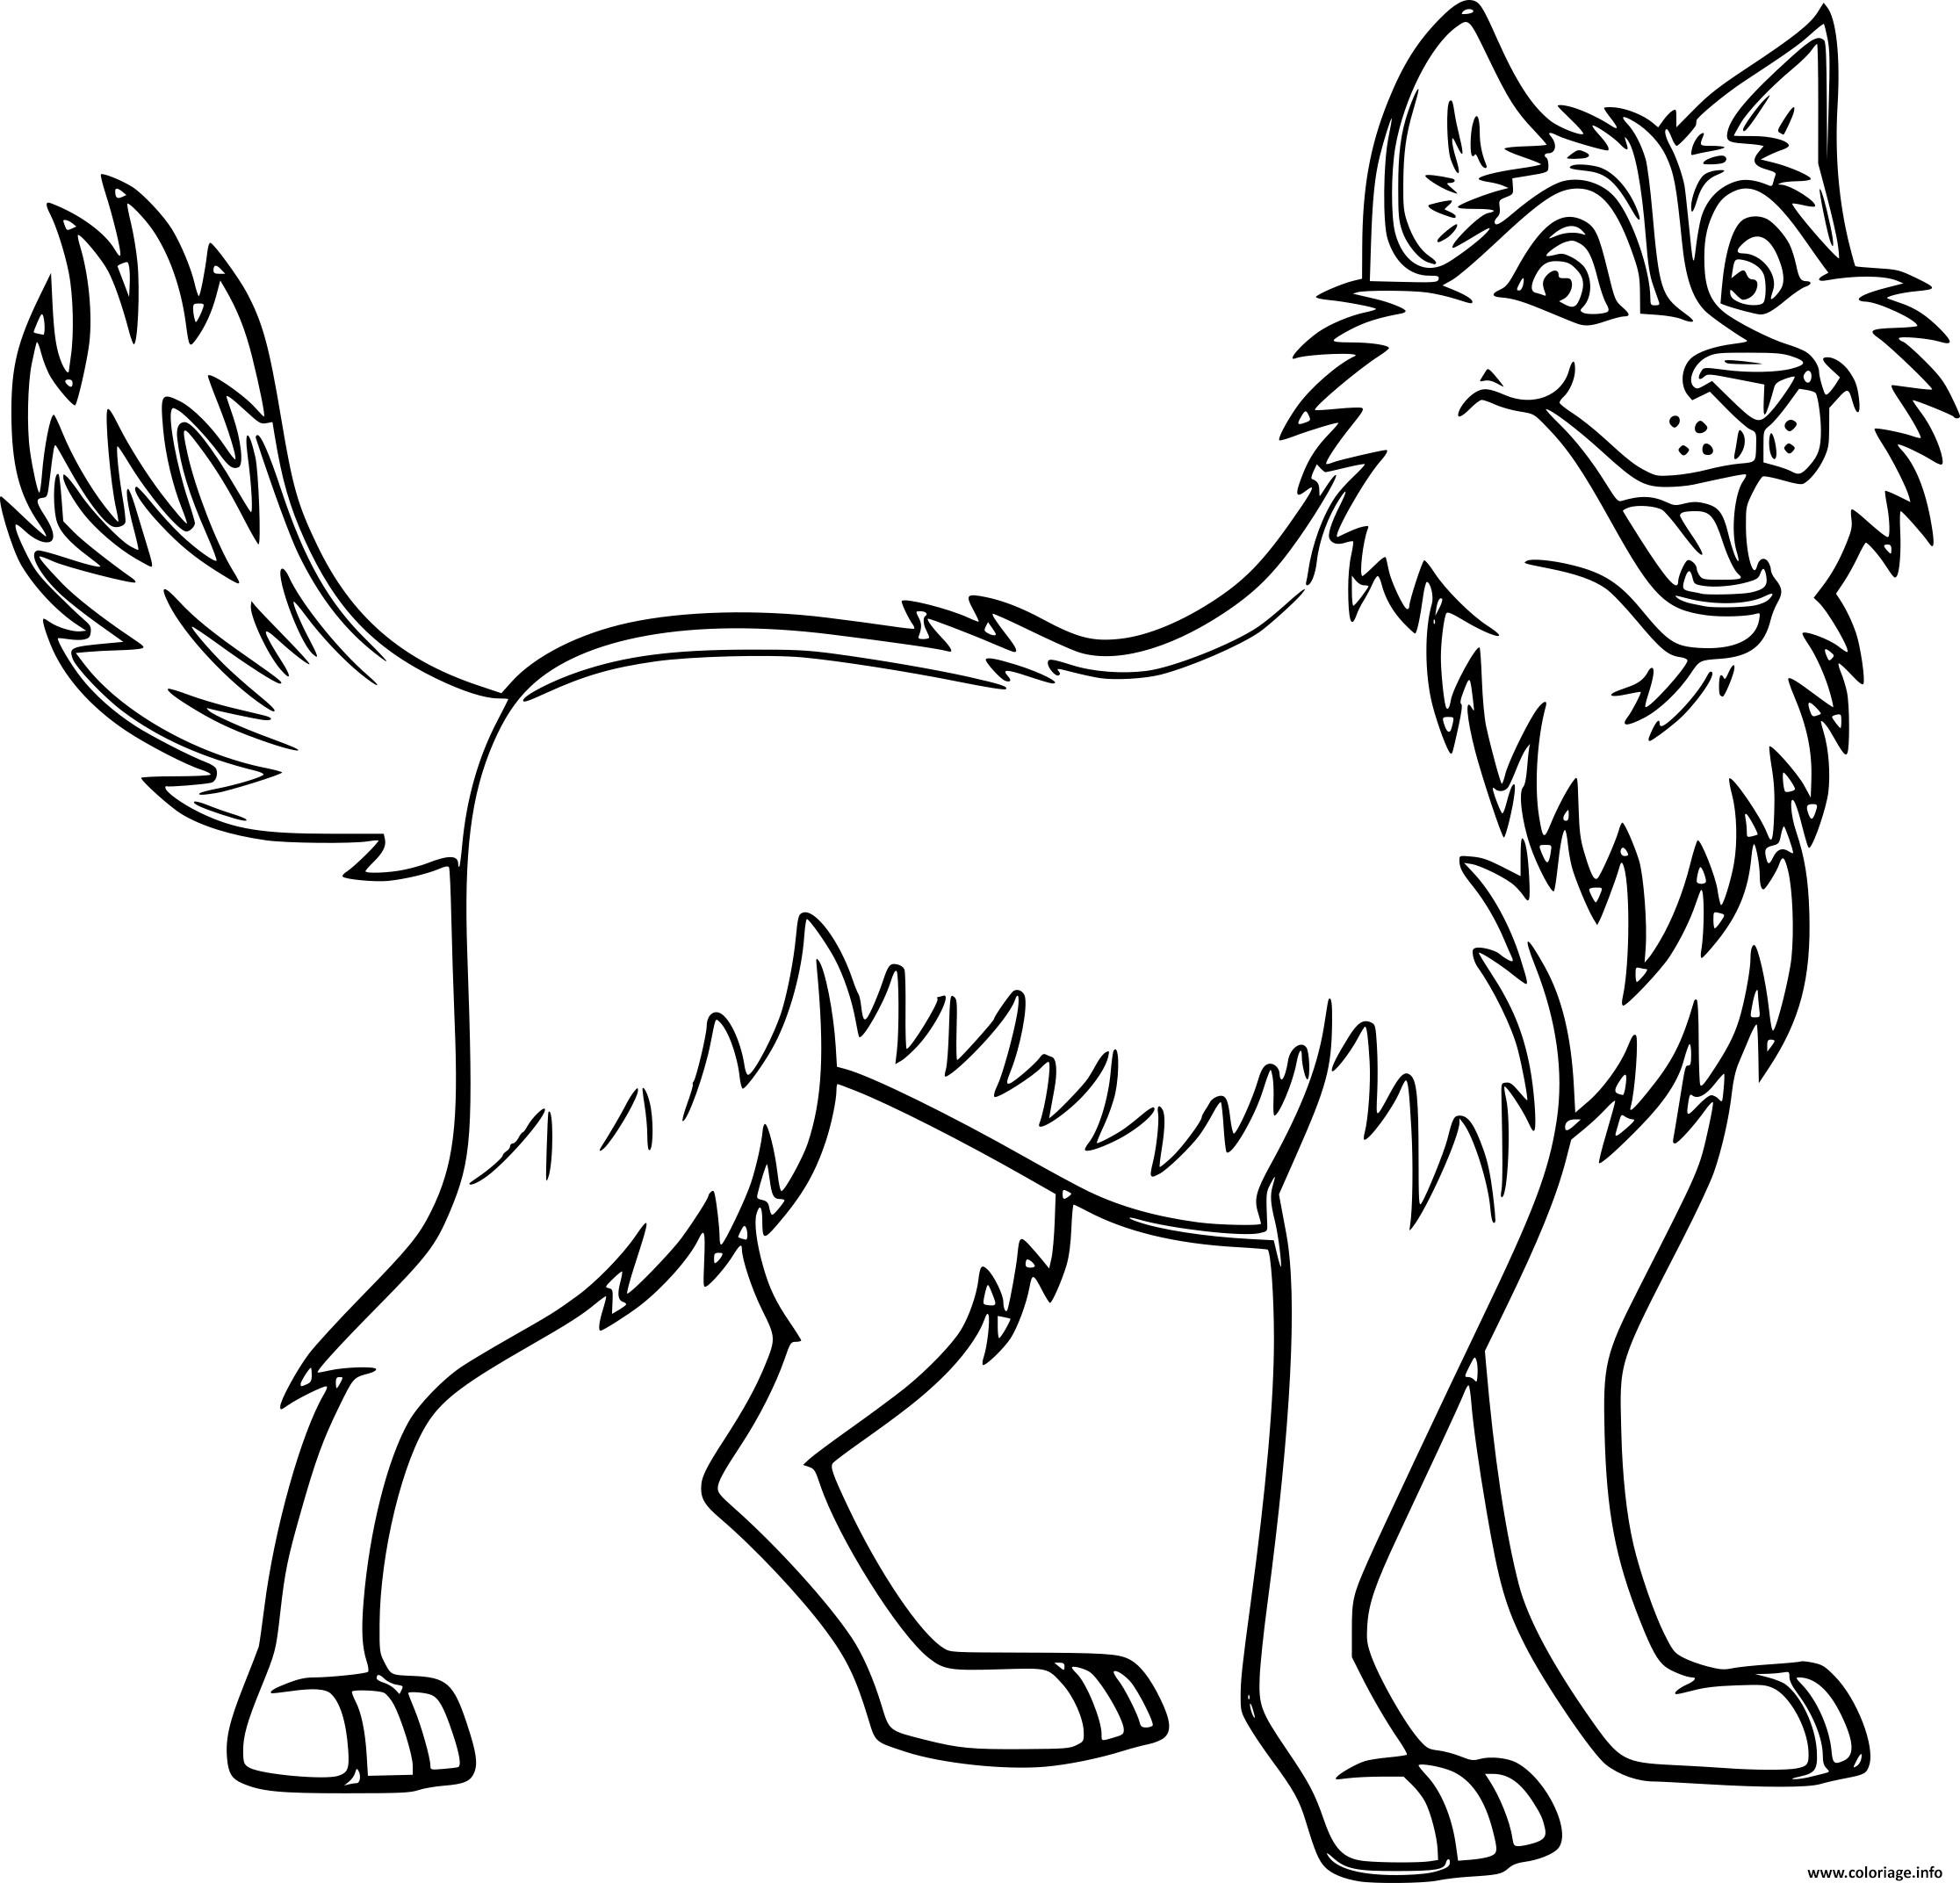 Dessin chien husky avec de beaux traits Coloriage Gratuit à Imprimer